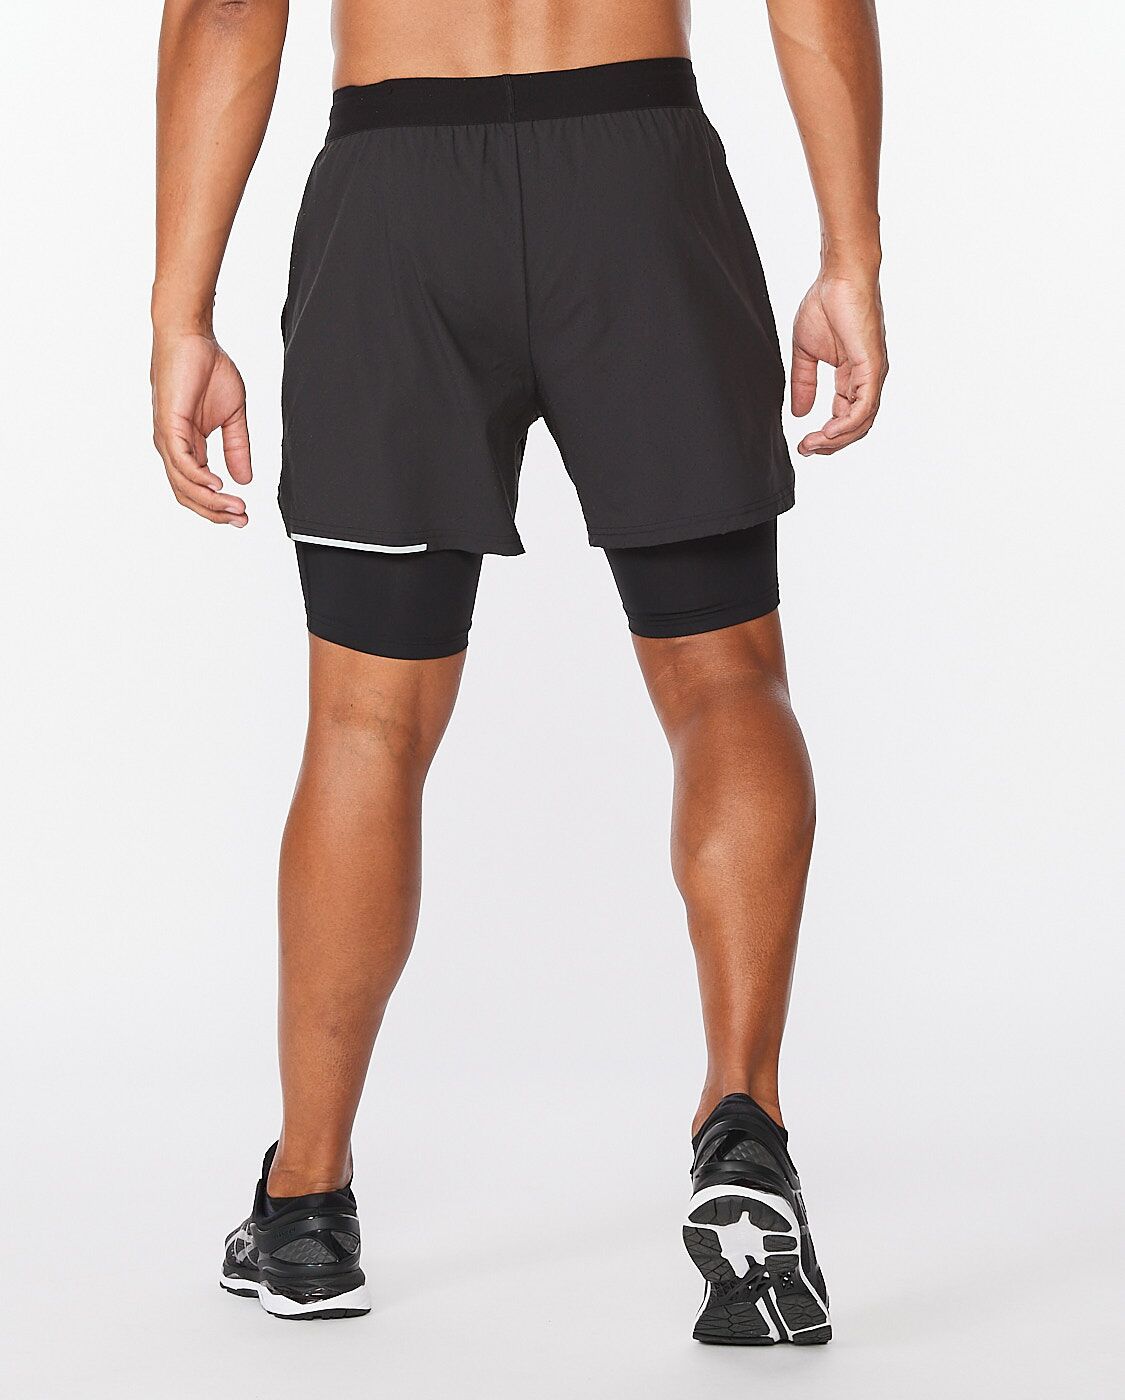 2XU Men&#39;s Aero 2-In-1 5 inch Shorts